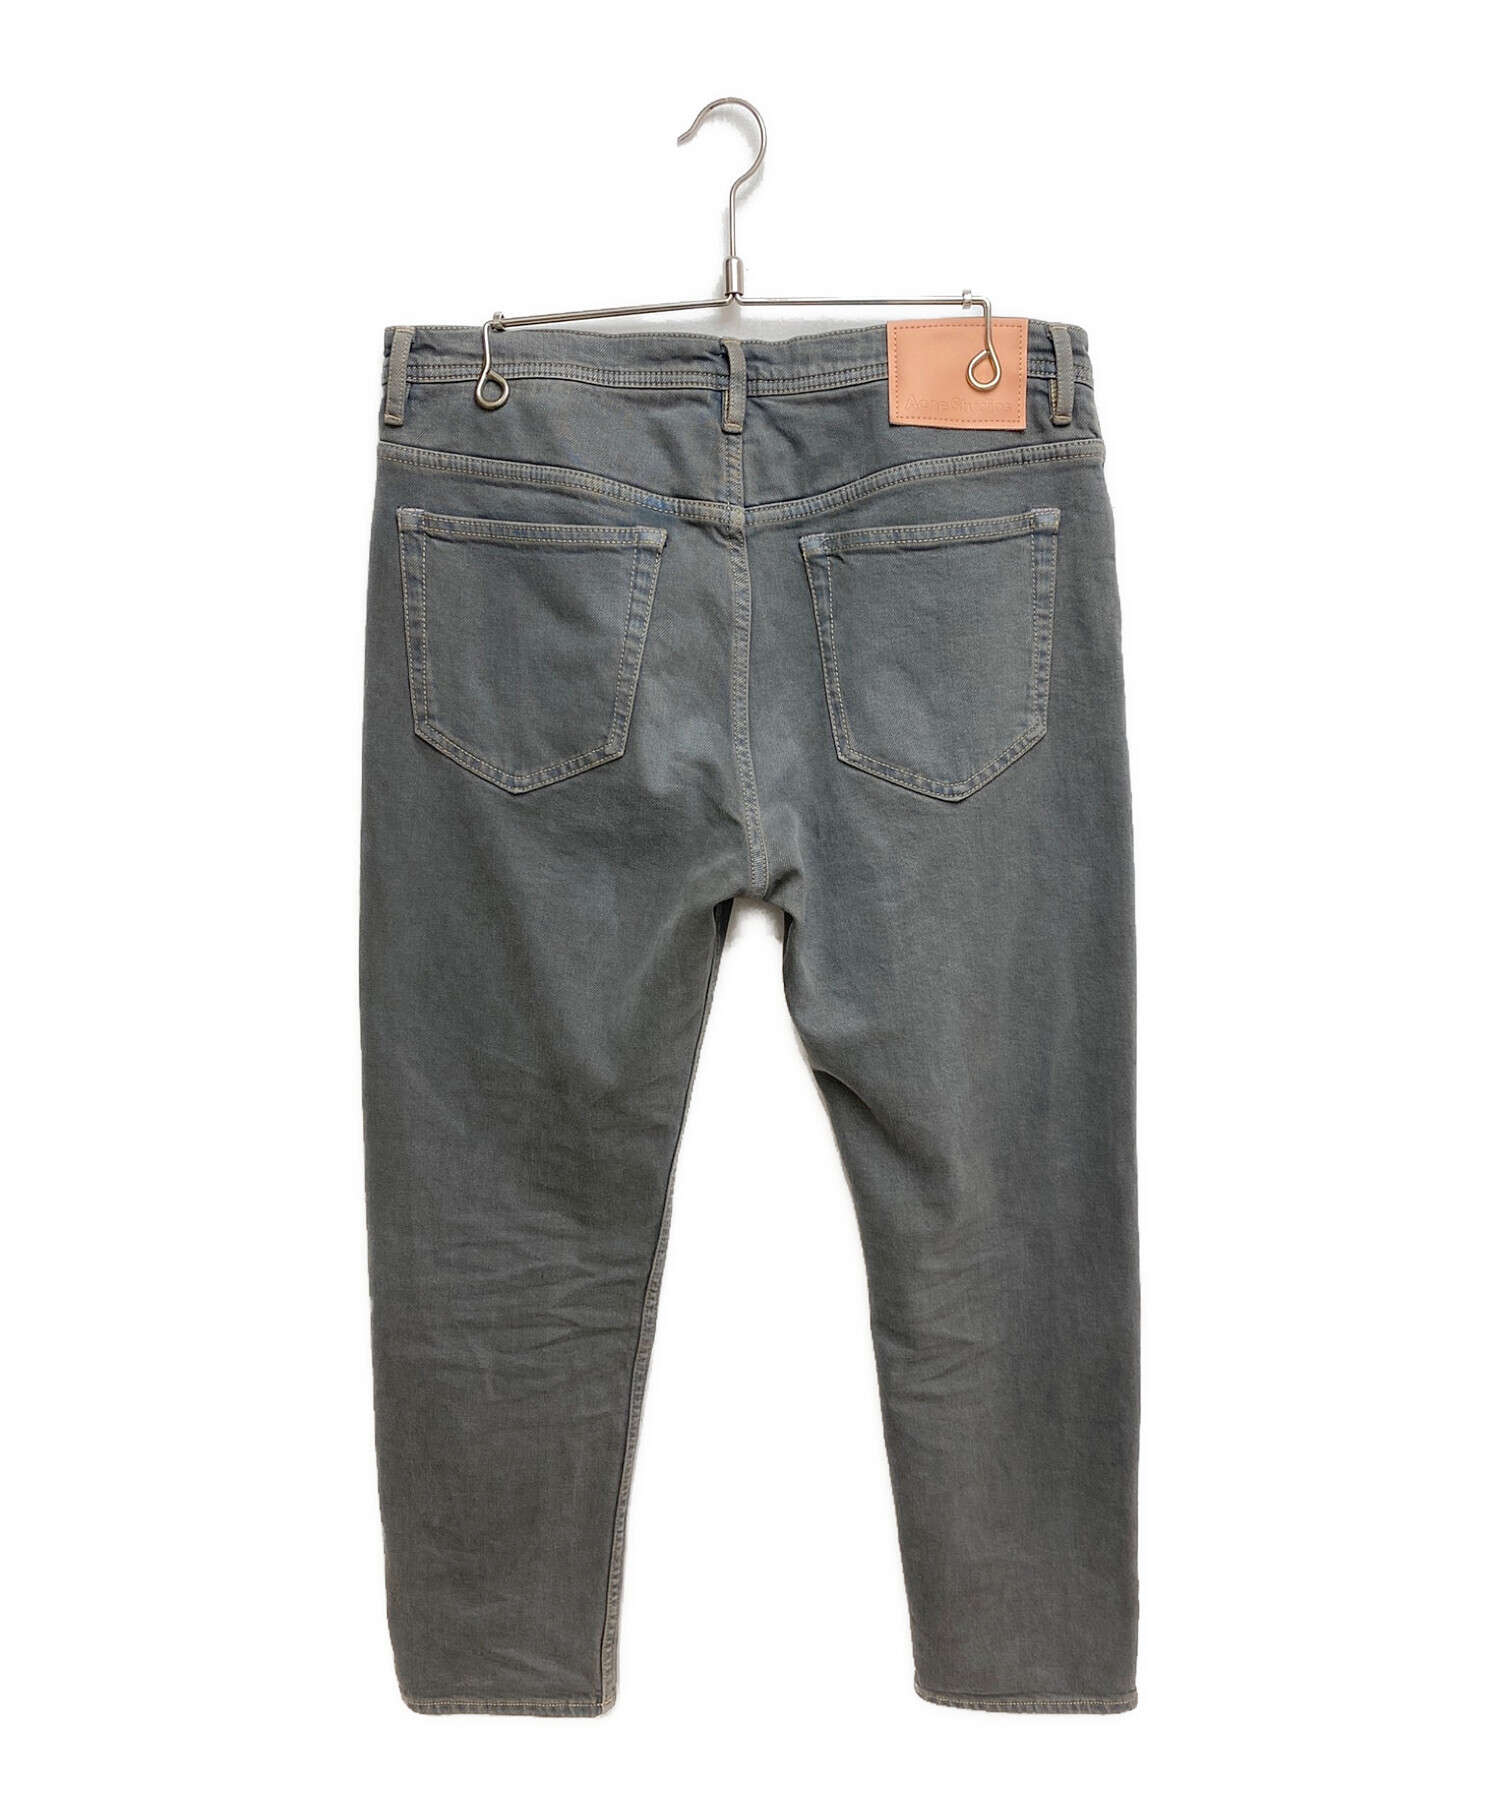 Acne studios (アクネストゥディオズ) River Desert Dust Slim Fit  Jeans(リバーデザートダストスリムフィットジーンズ） グレー サイズ:33